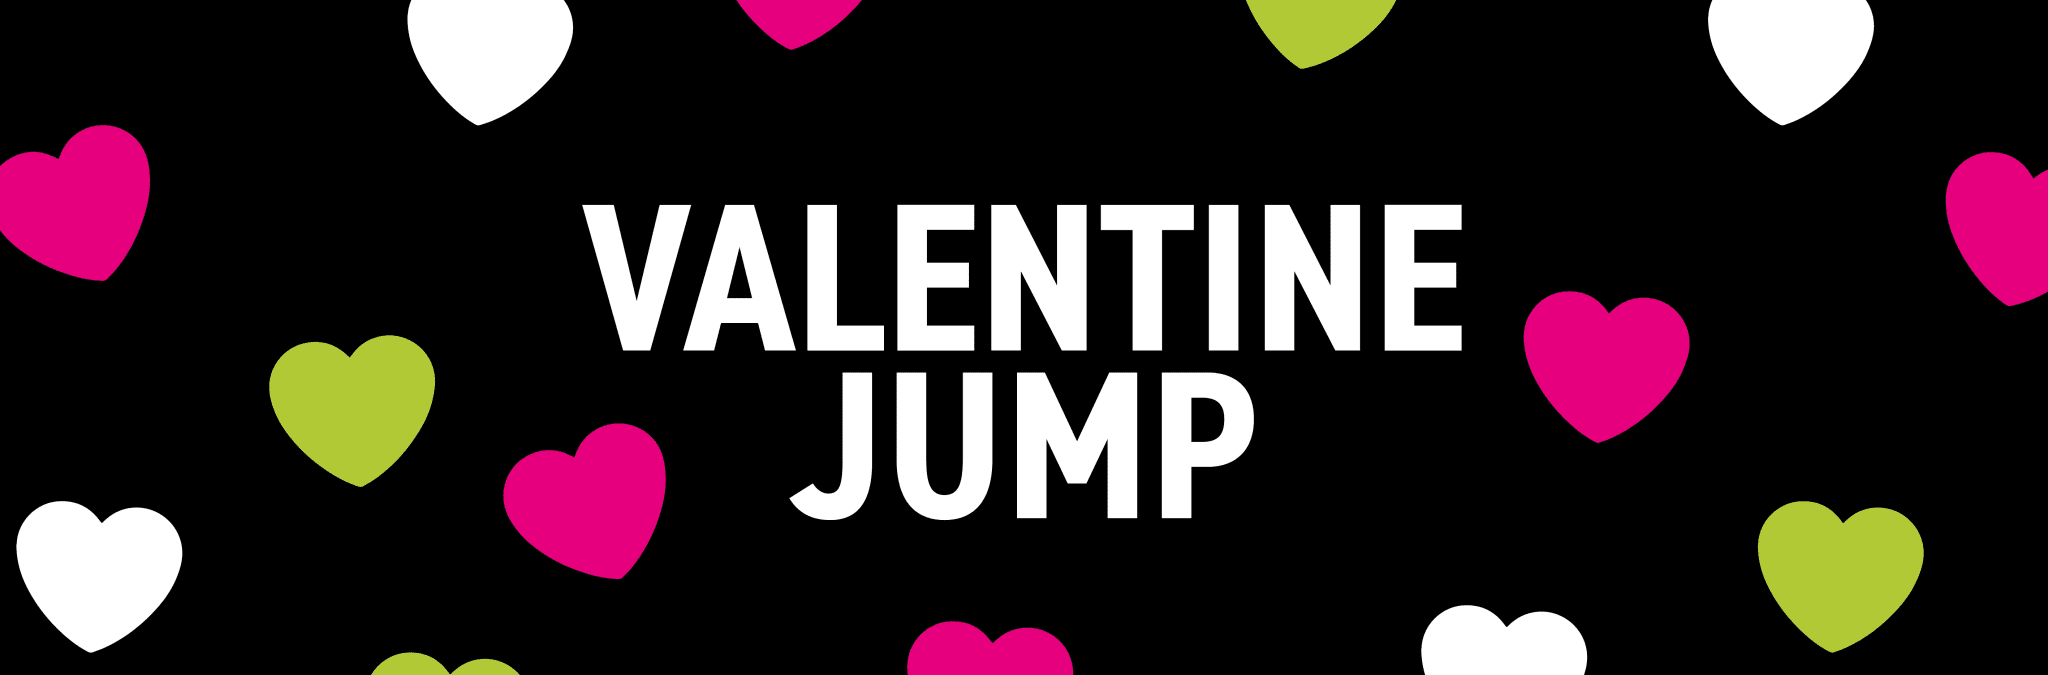 Valentine jump